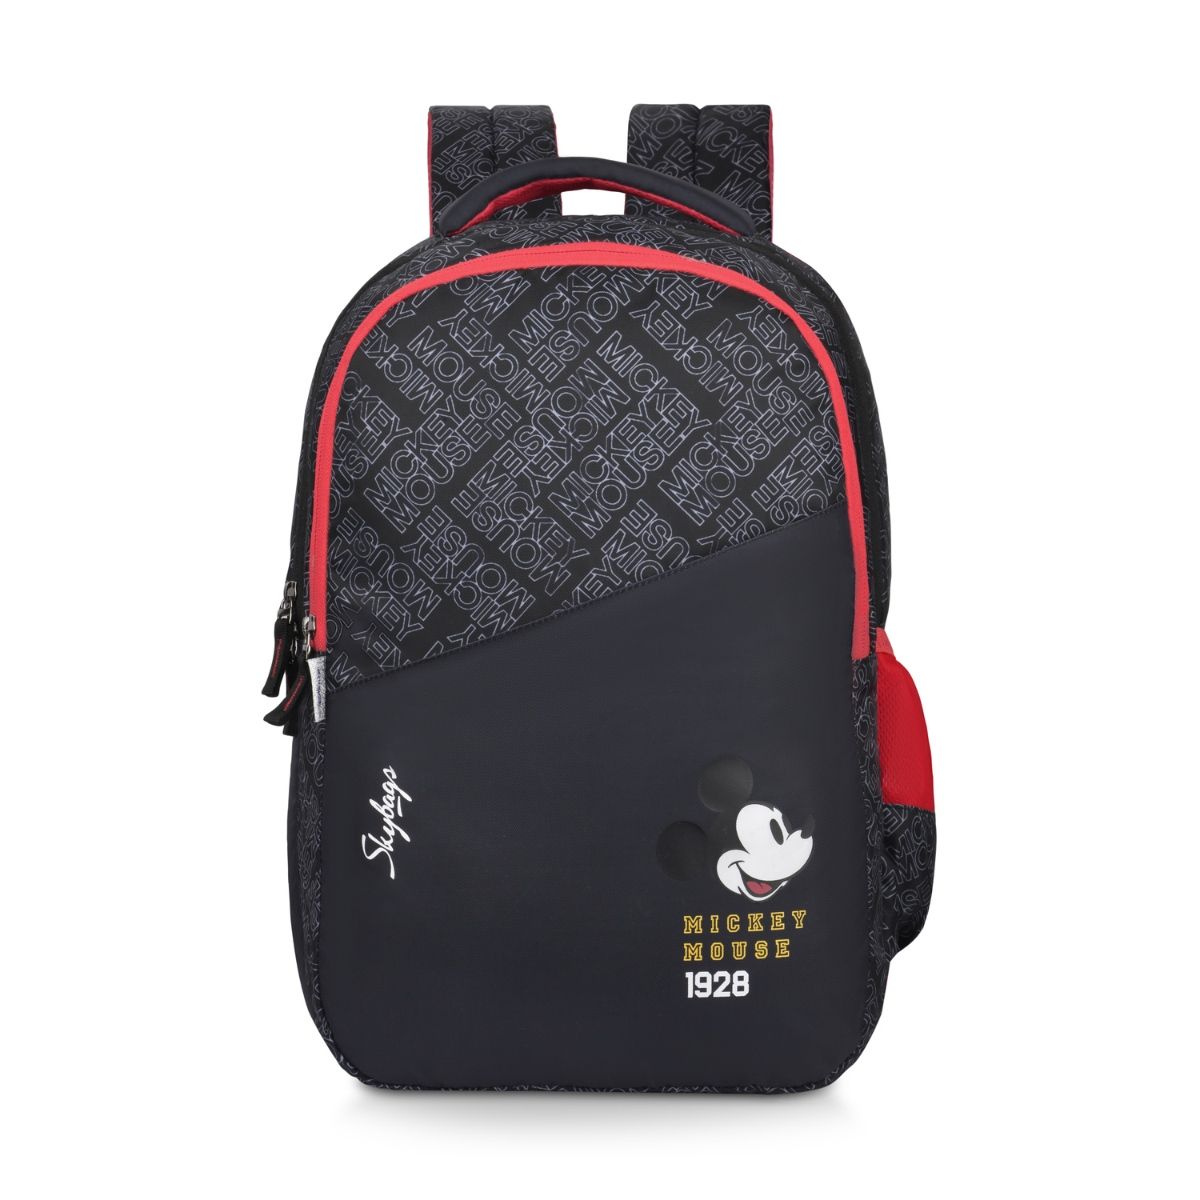 Buy Skybags Disney Mickey School Backpack 01 Black Online